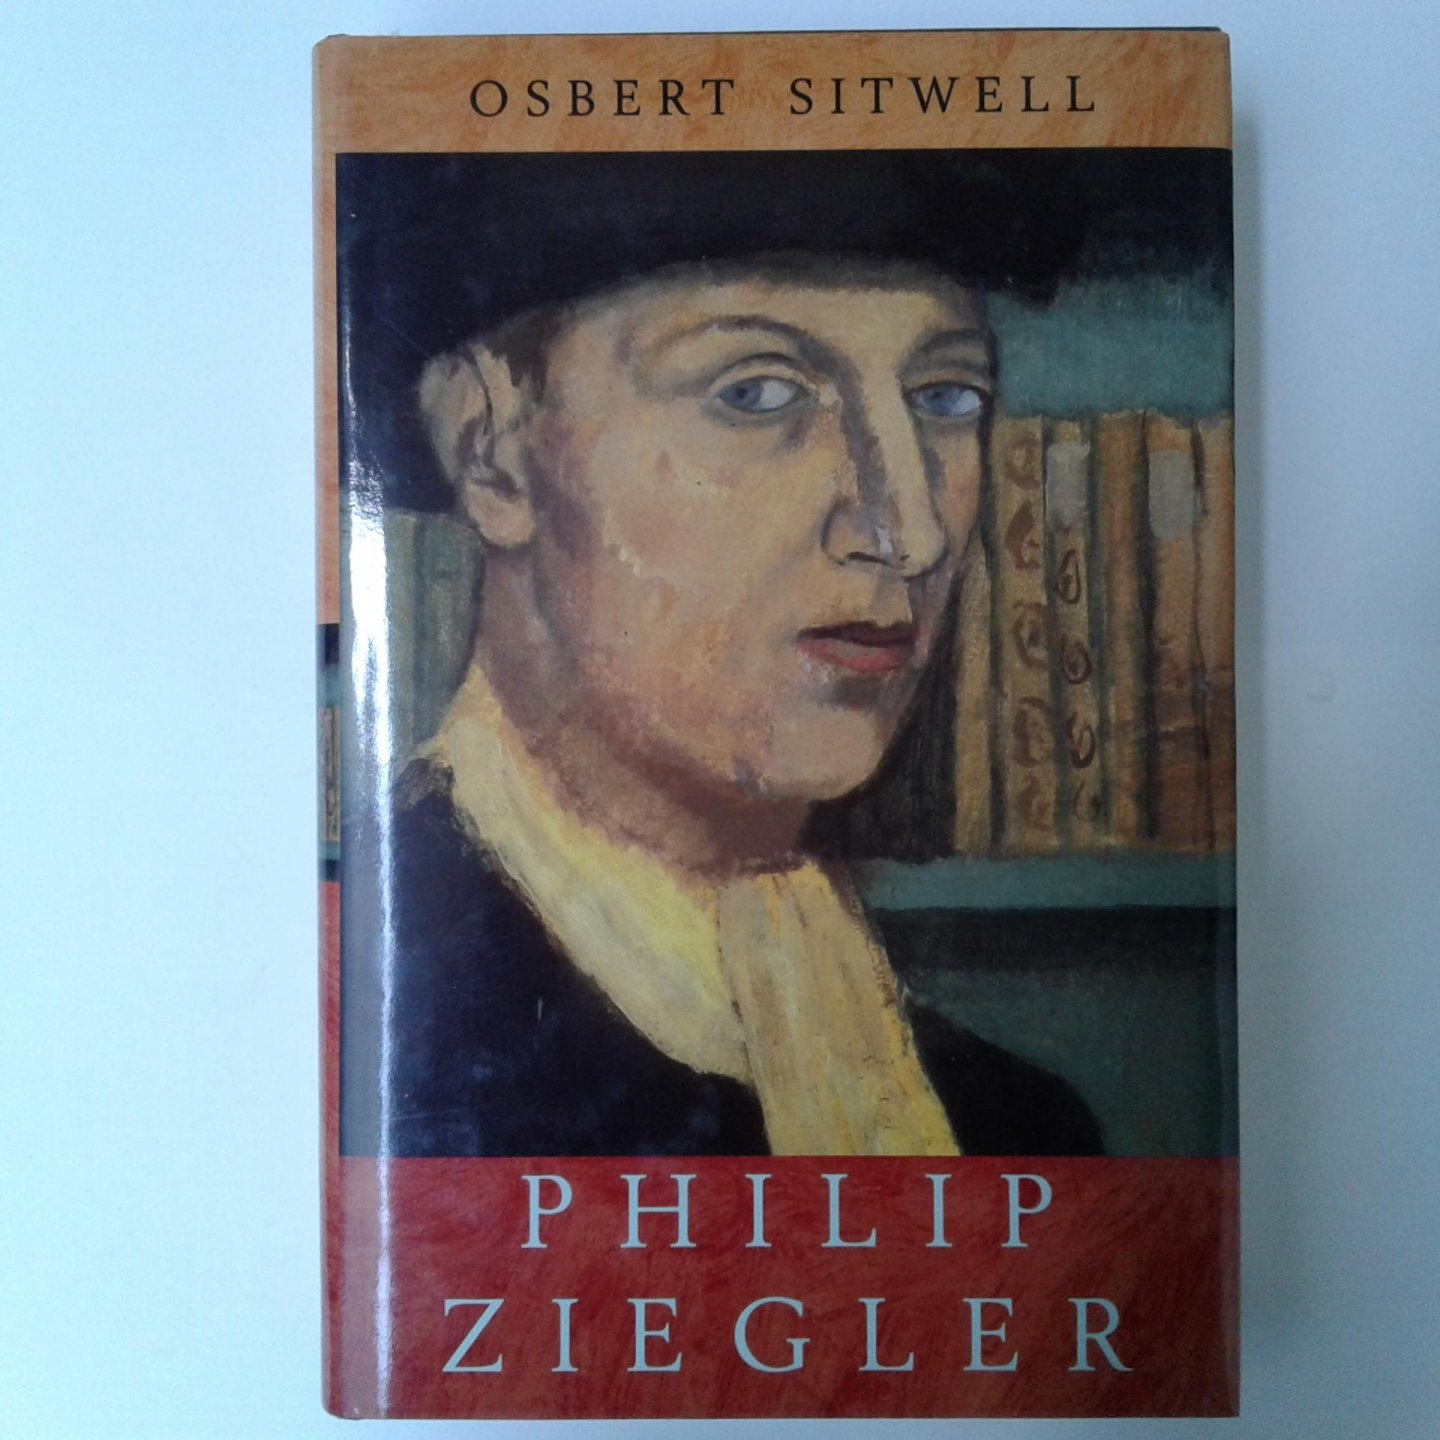 Ziegler, Philip - Osbert Sitwell